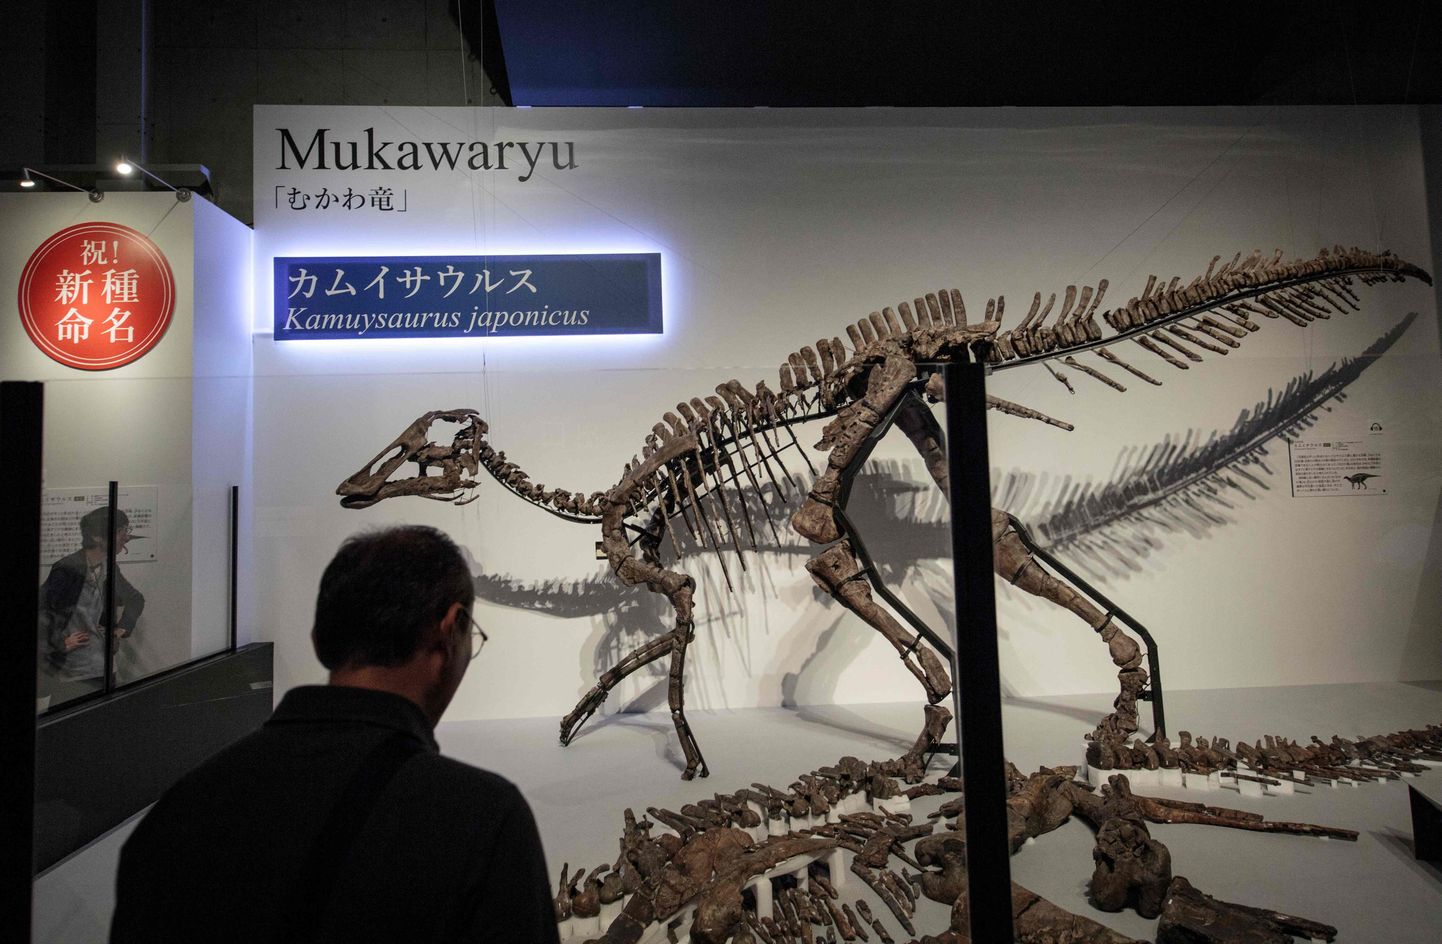 Jaapani teadlaste avastatud uue dinosauruseliigi kamuysaurus japonicus elusuuruses koopia reedel Tokyos väljapanekul Dinosaur Expo 2019.